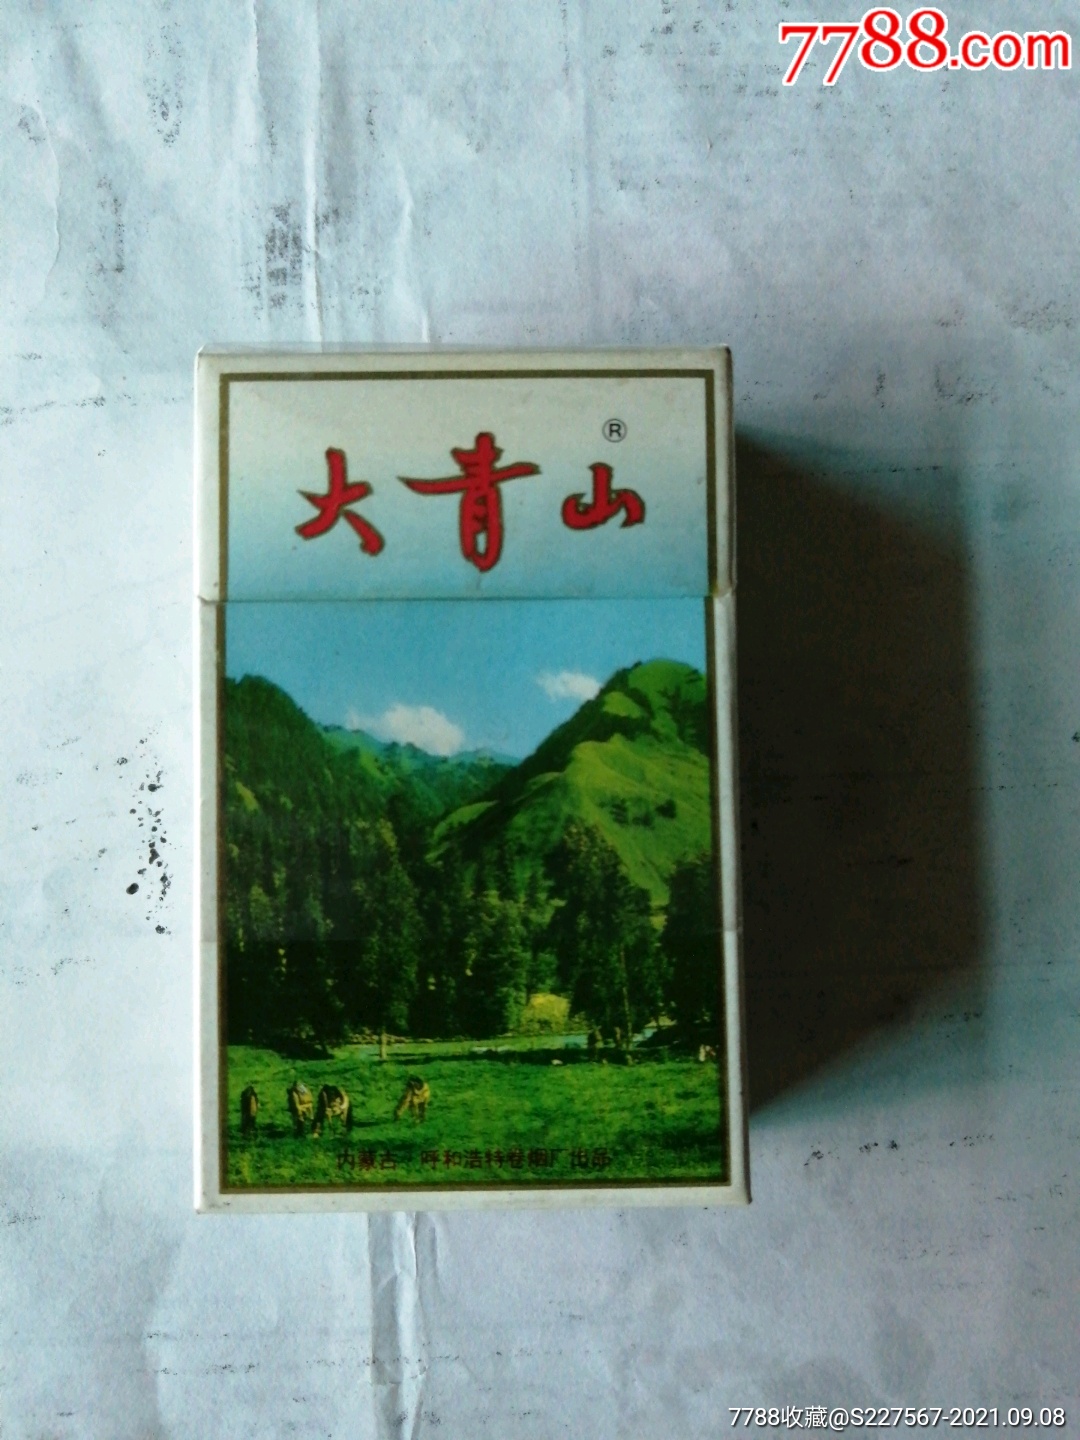 内蒙古香烟品牌布察图片